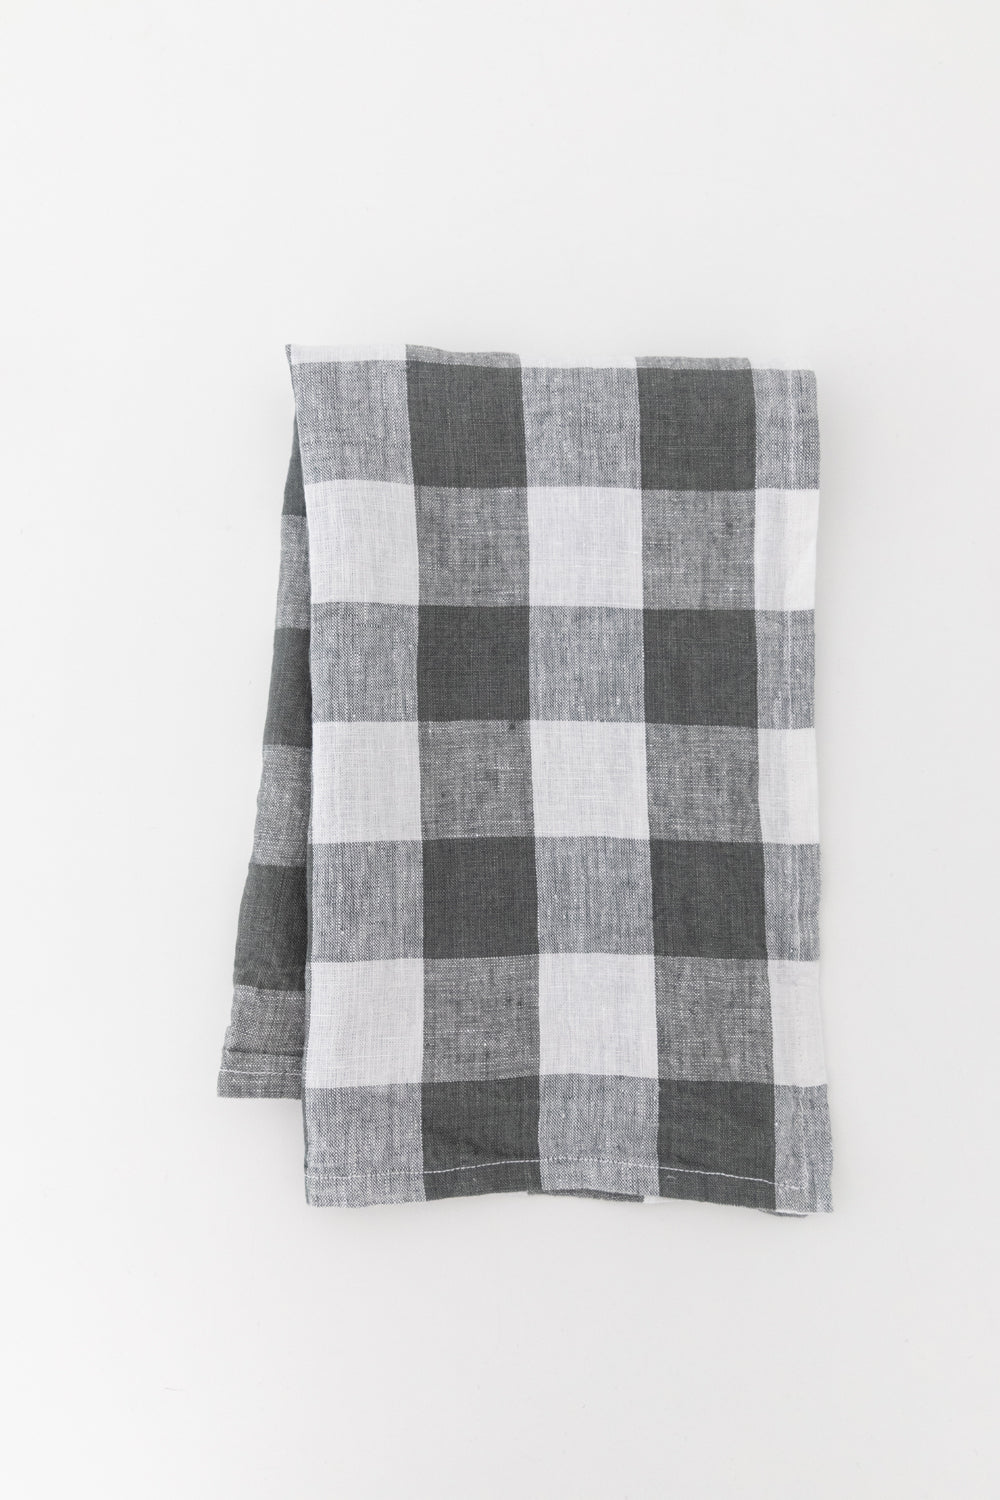 Linen Tea Towel in Navy Gingham - Heirloomed